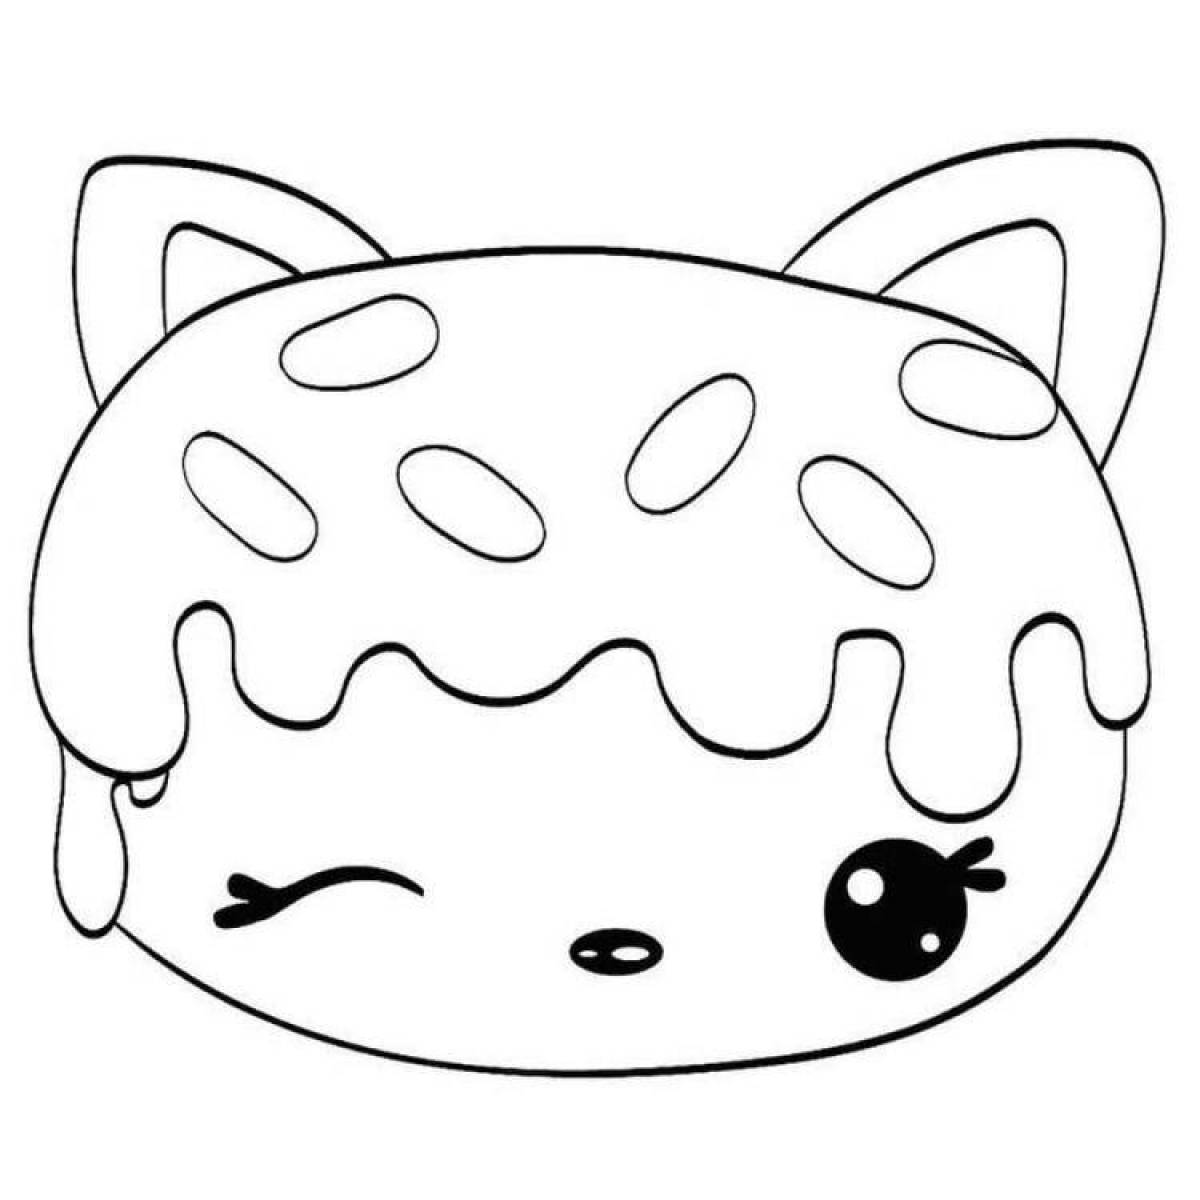 Coloring cute kawaii cat